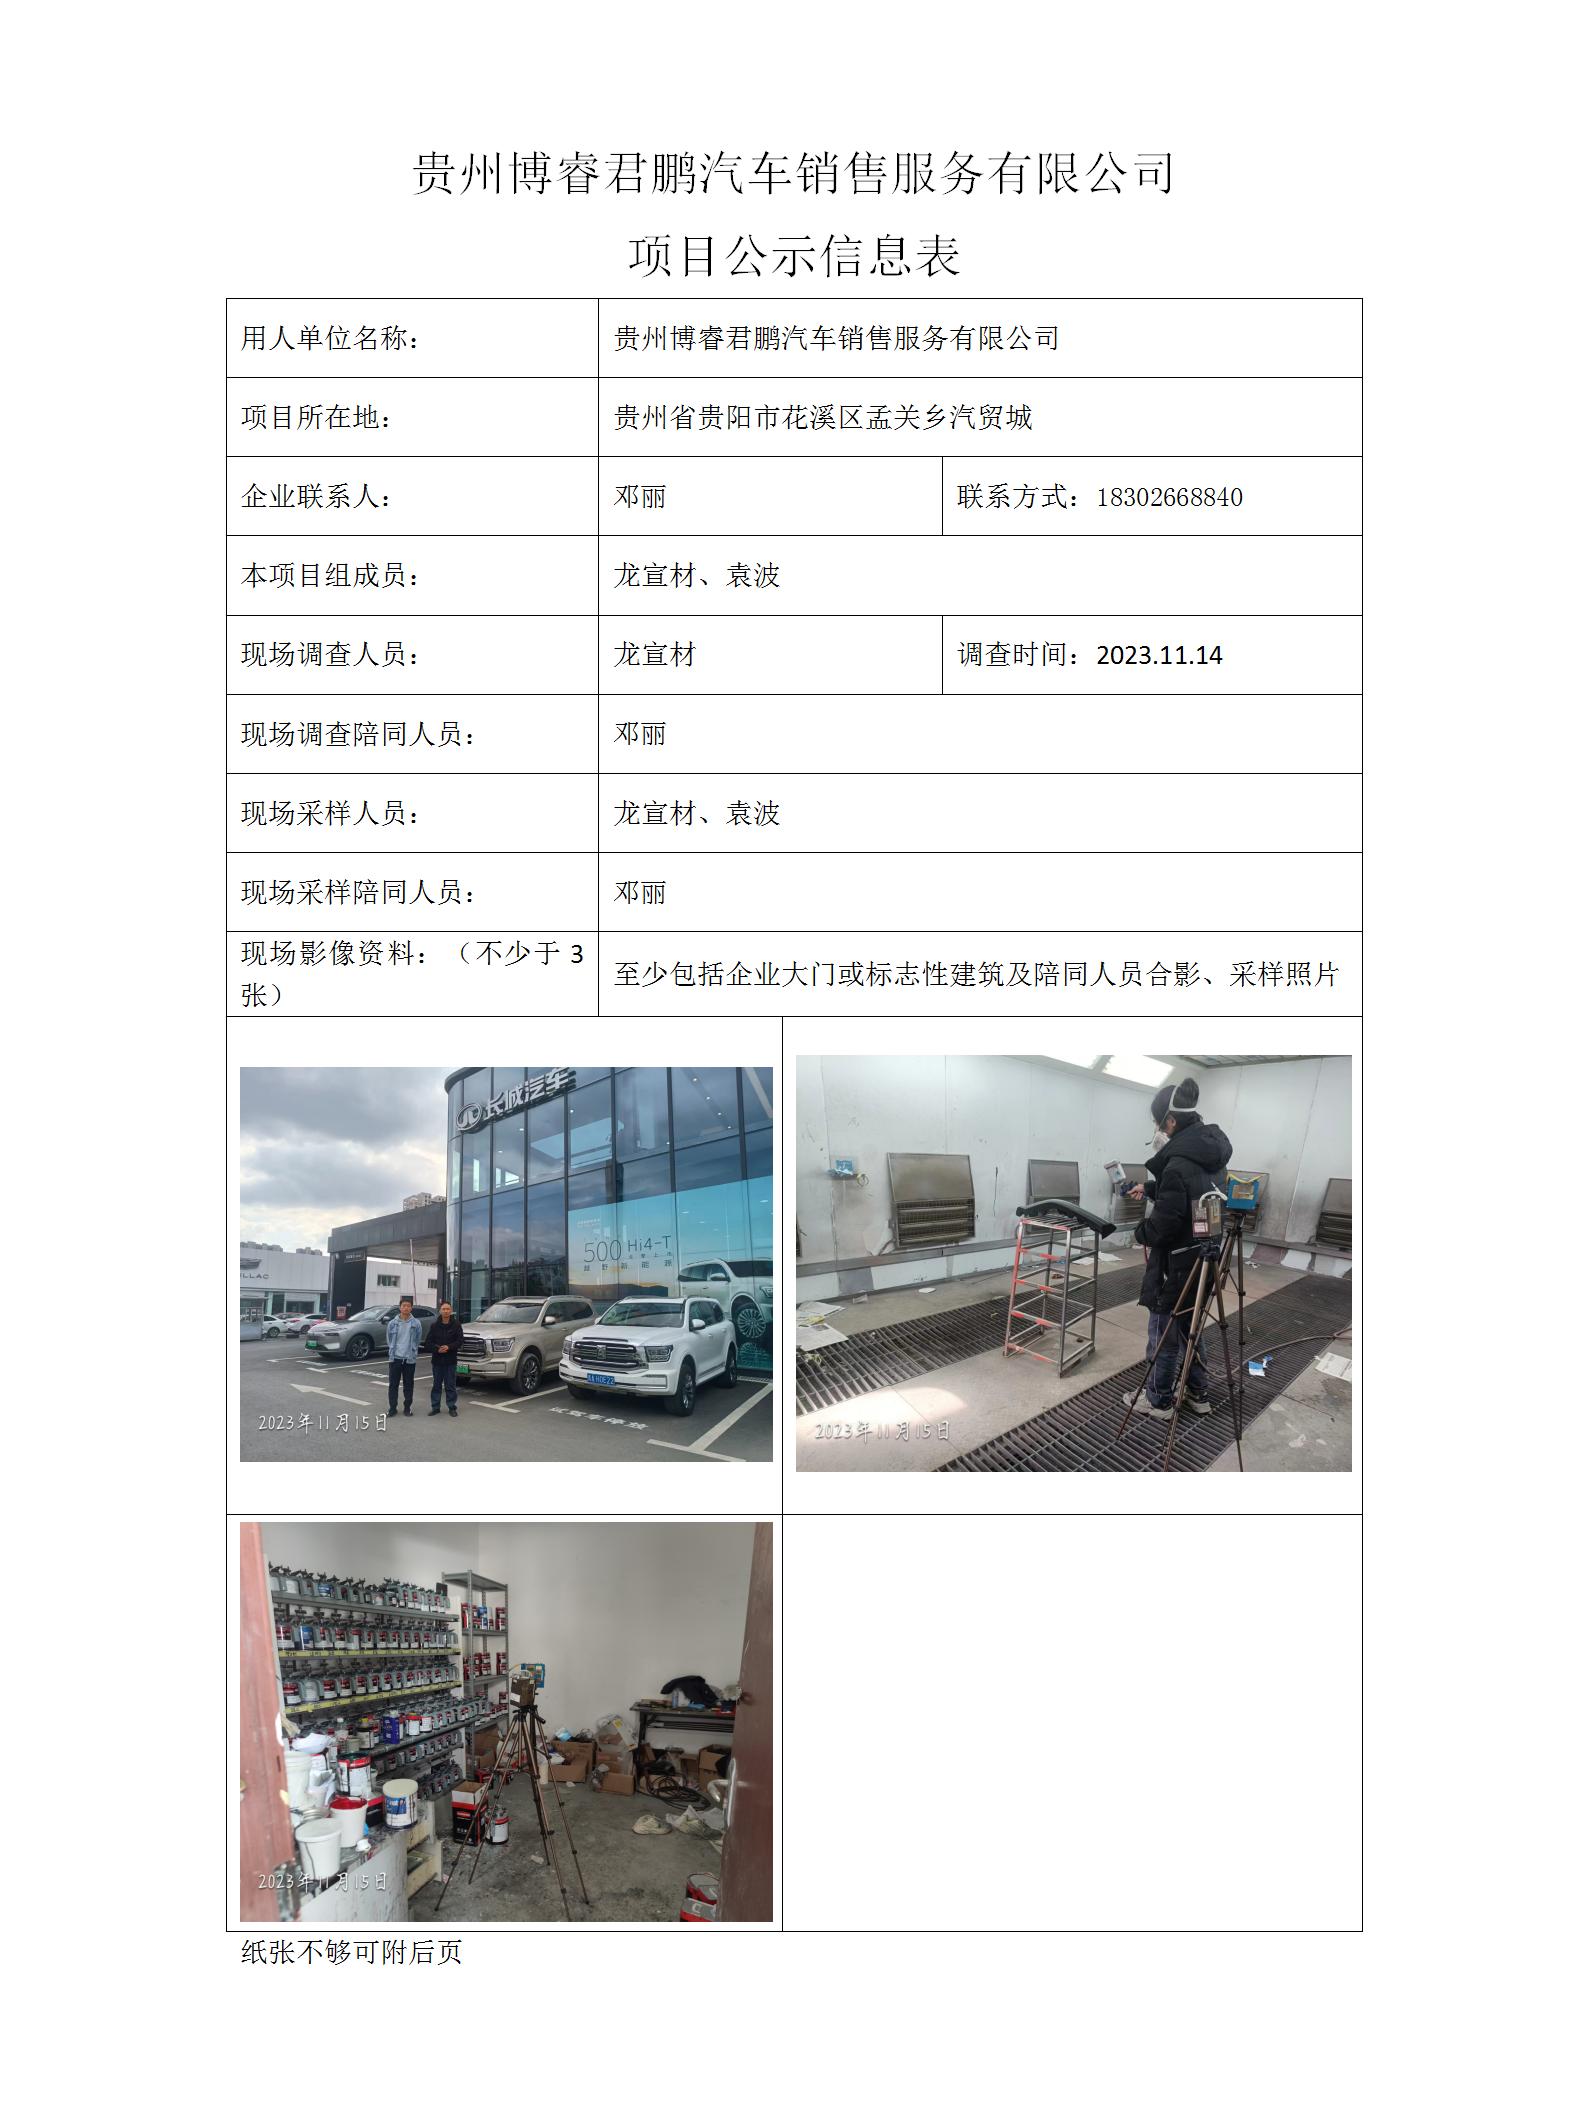 贵州博睿君鹏汽车销售服务有限公司项目公示信息表_01.jpg